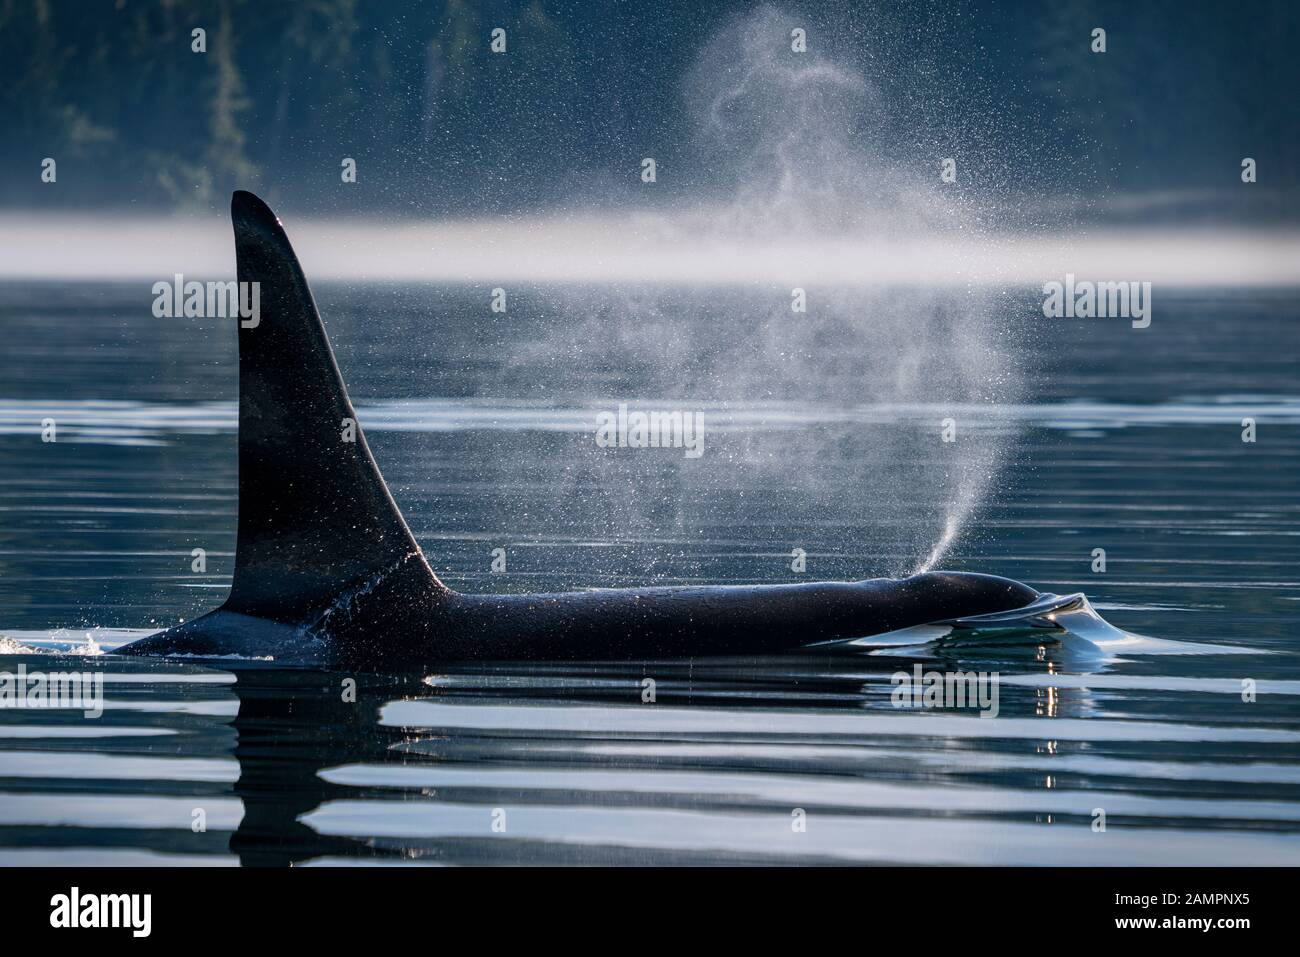 L'A66 - Surf - famille: A42. Épaulard mâle résidant dans le Nord (Orcinus orca), détroit de Johnstone au large de l'île de Vancouver (Colombie-Britannique), Canada. Banque D'Images